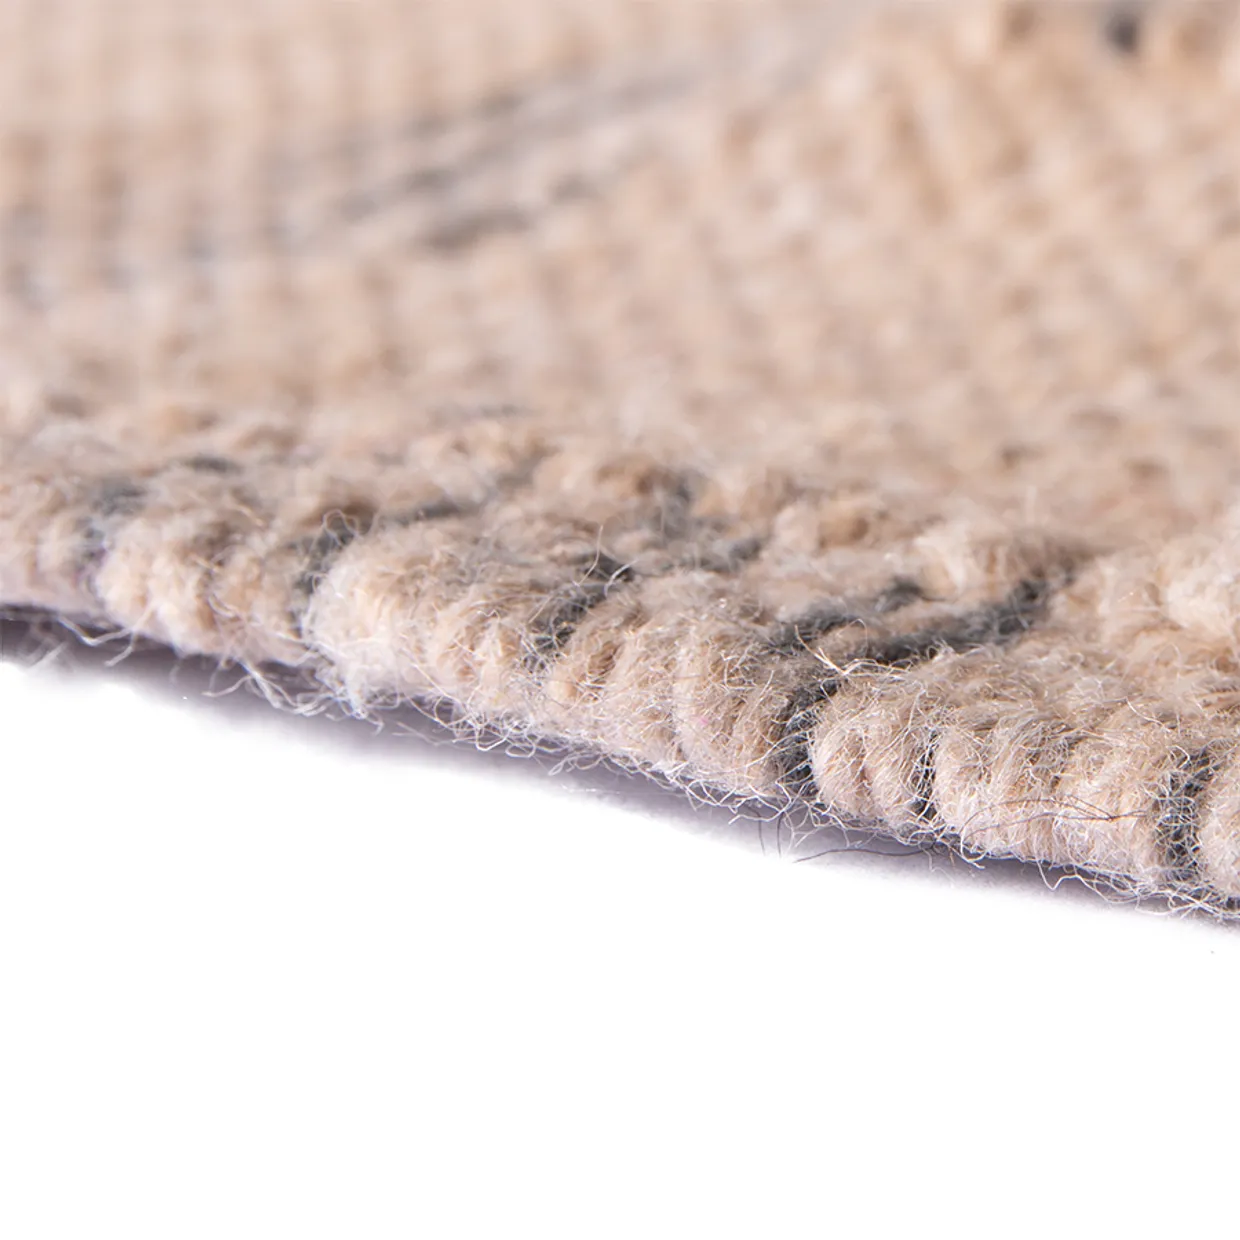 Hand woven indoor/outdoor rug natural (120x180)